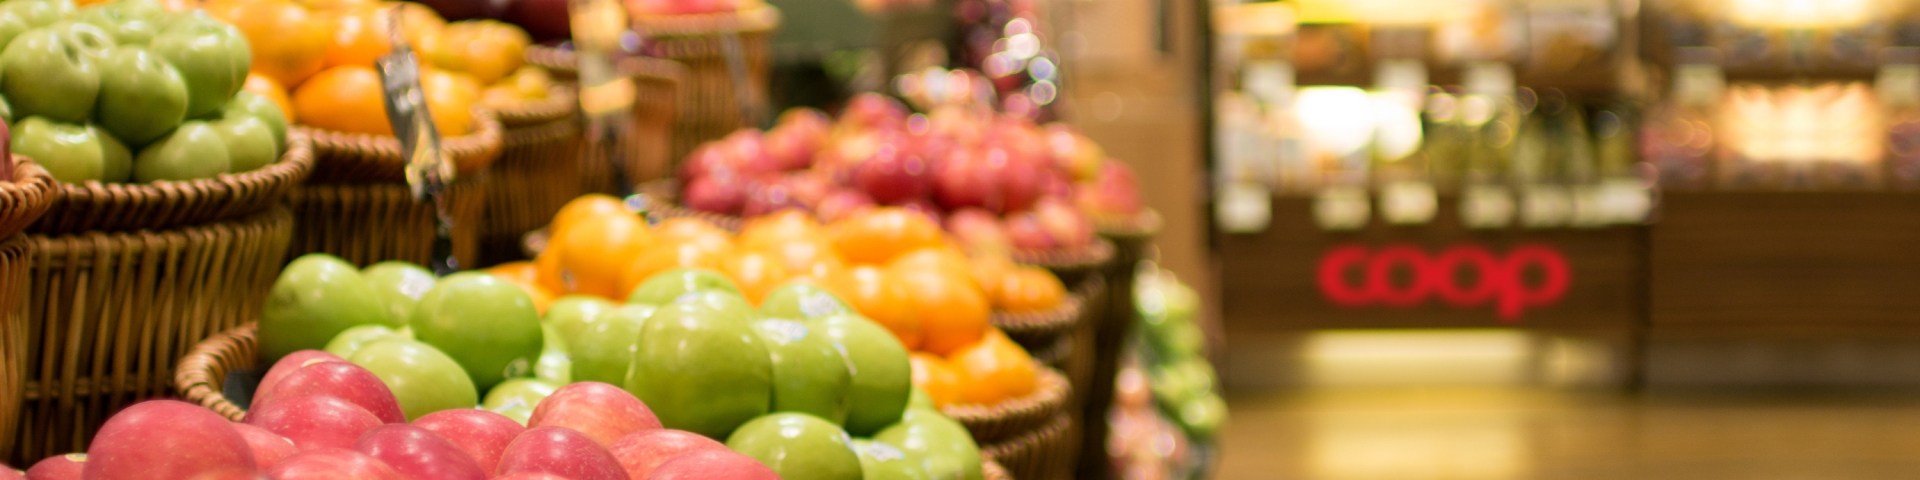 Fruits in super market